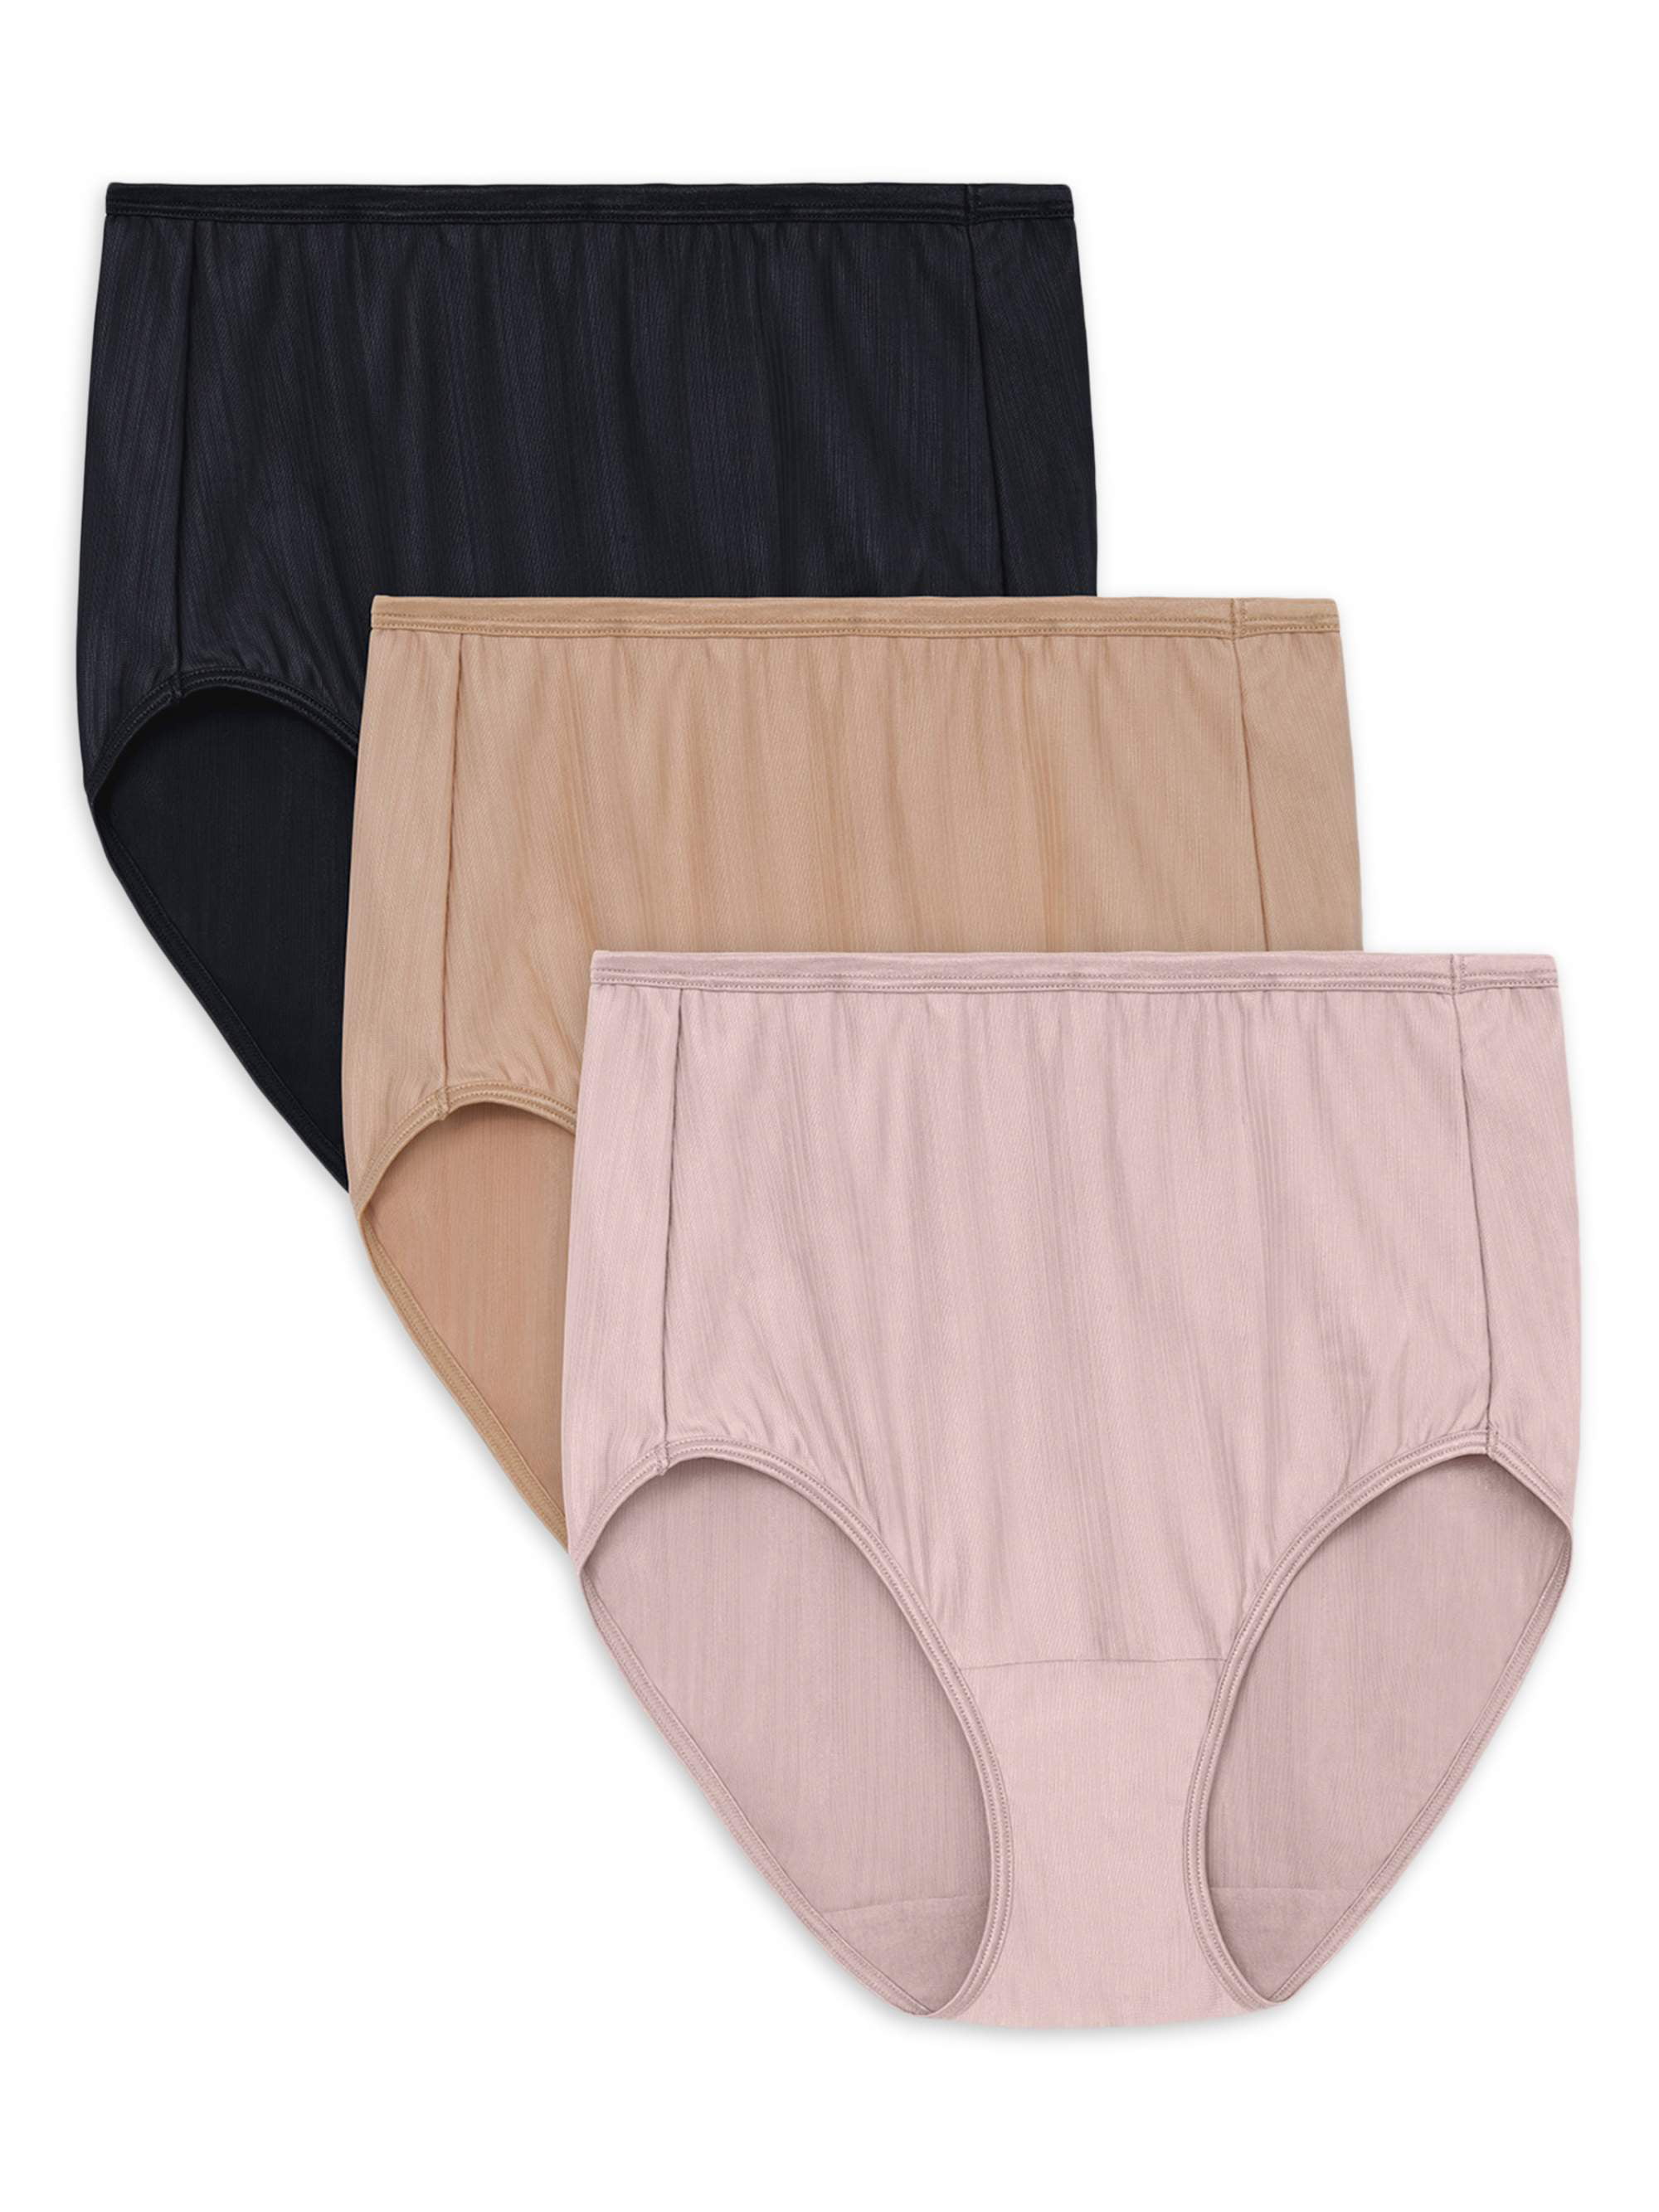 Vanity Fair Radiant ~ Womens Hi-Cut Underwear Panties 3-Pair Nylon Blend ~ 2XL/9 